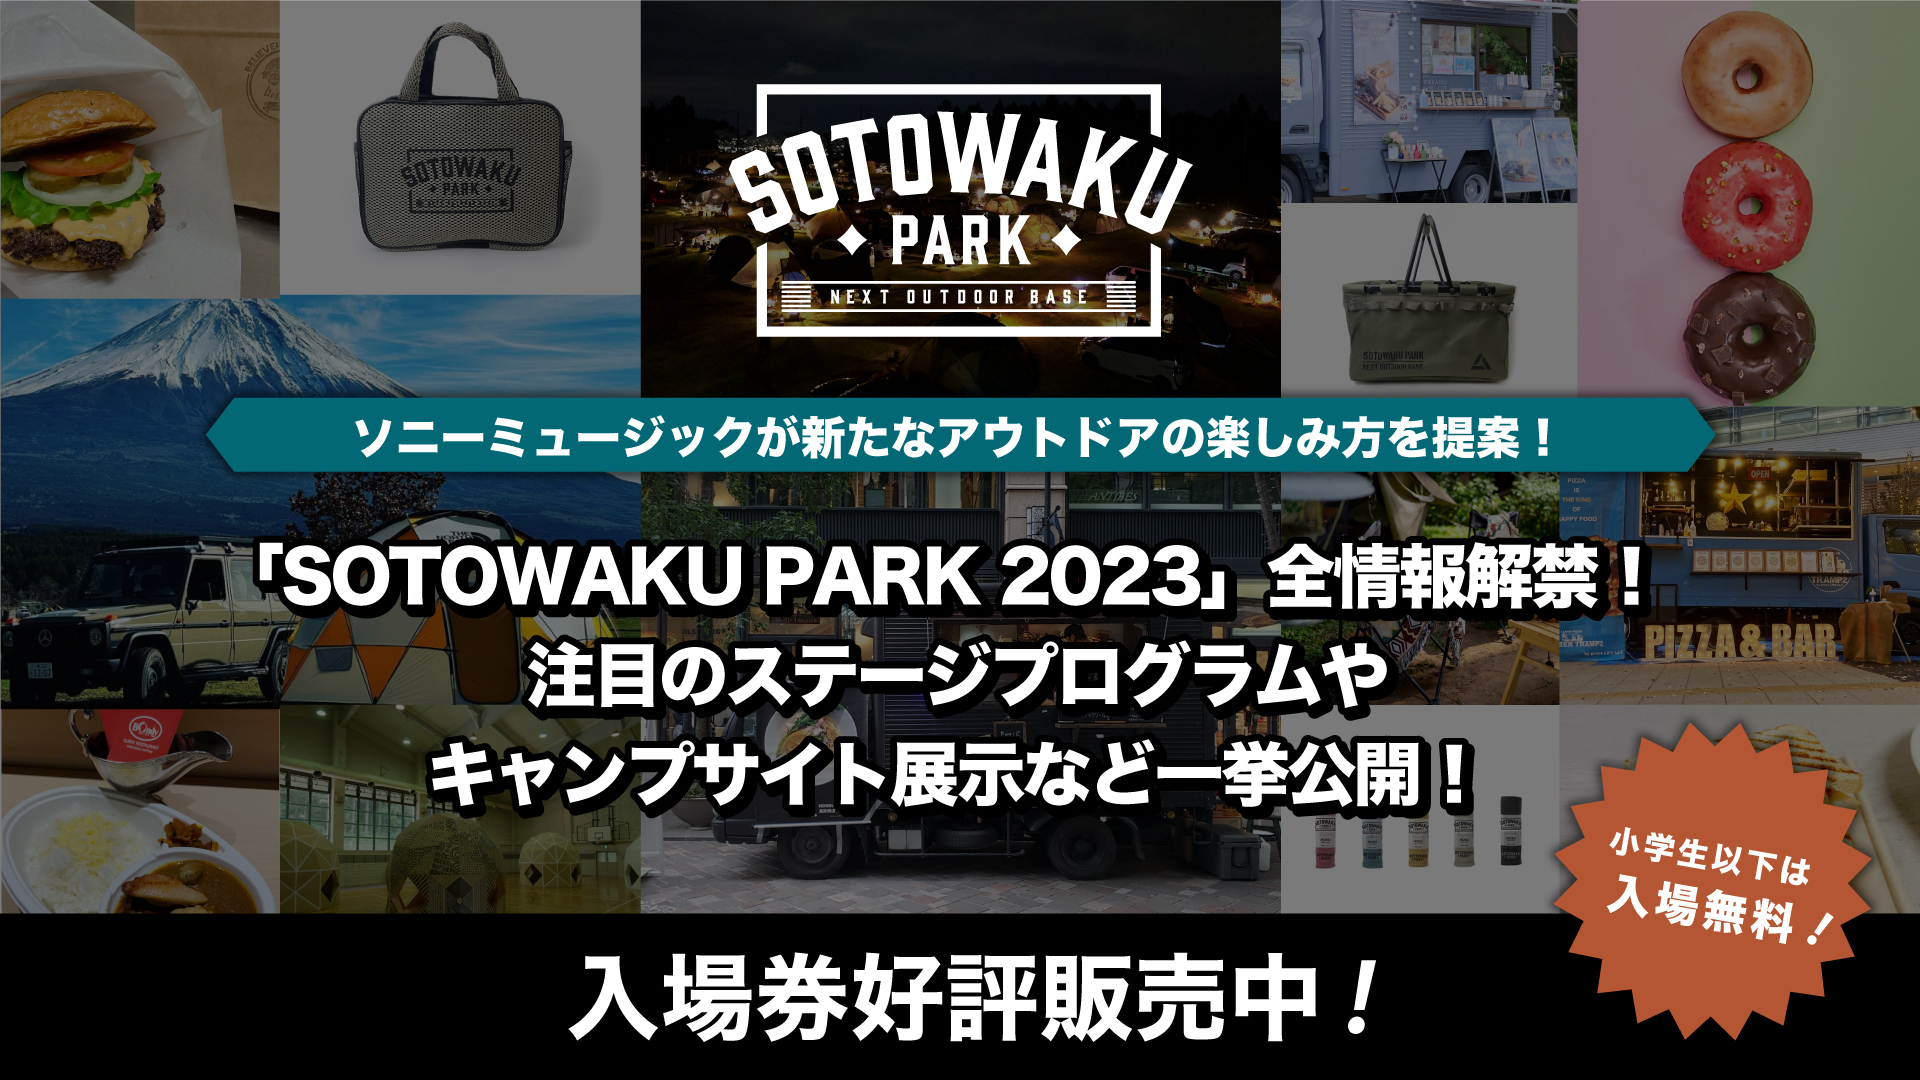 ソニーミュージックが新たなアウトドアの楽しみ方を提案！
「SOTOWAKU PARK 2023」全情報解禁！